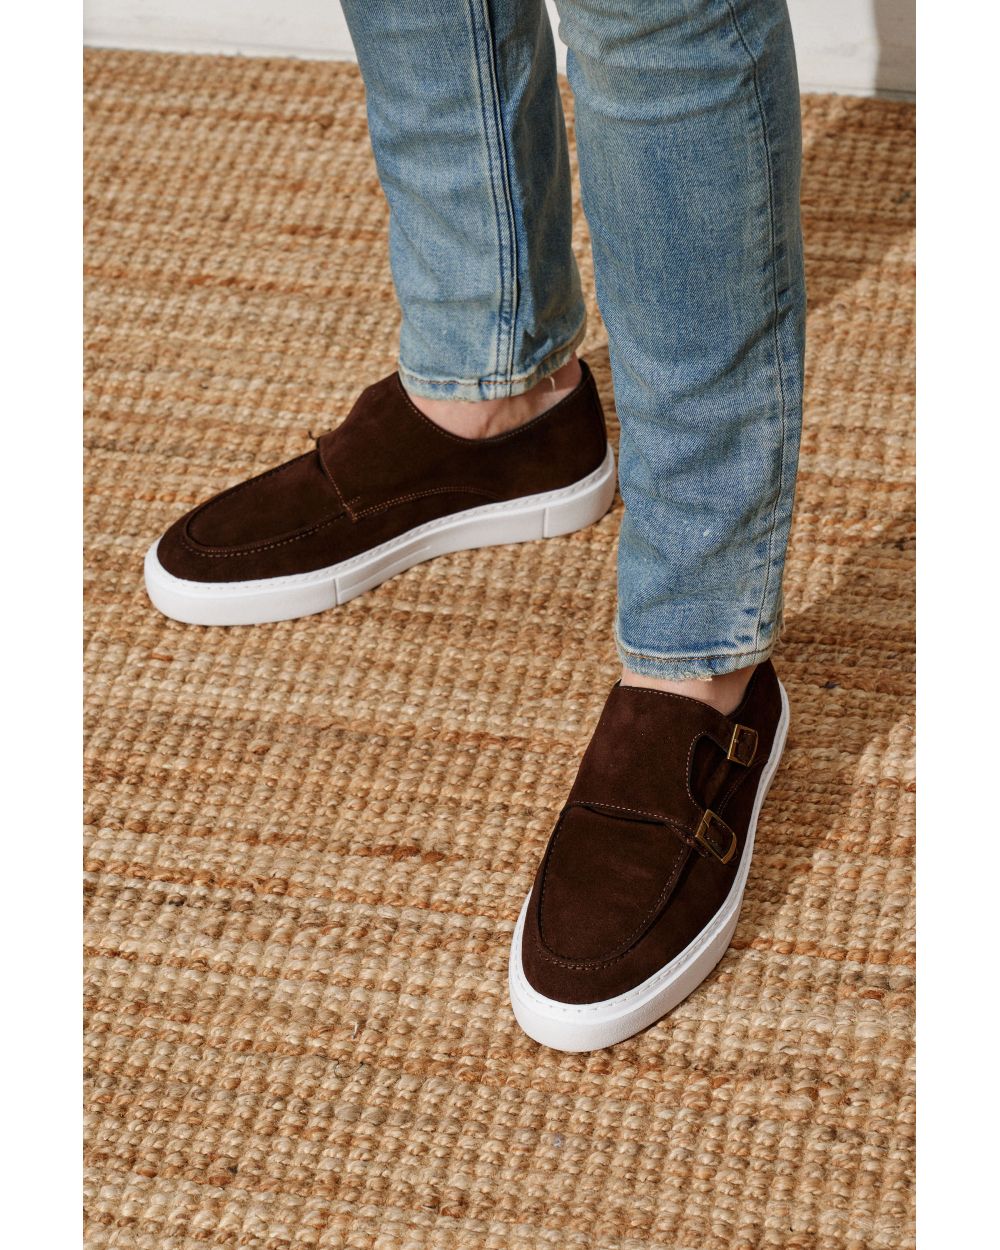 Туфли мужские коричневые замшевые слипоны дабл-монки